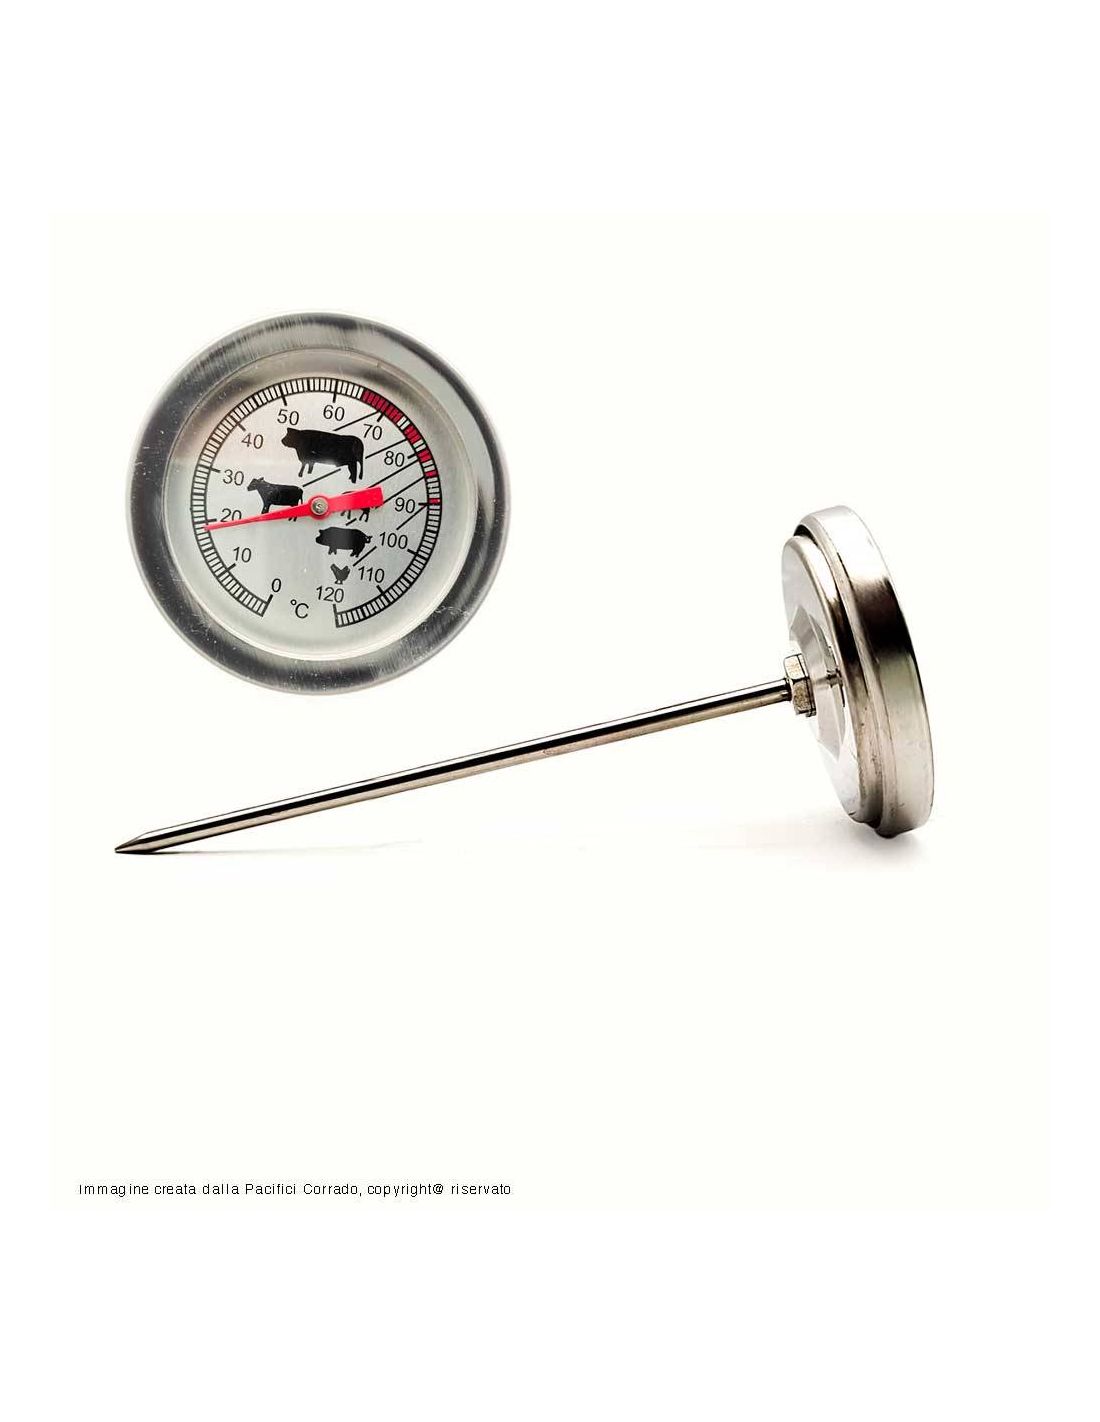 termometro a sonda in acciaio inox per misurare la temperatura della carne